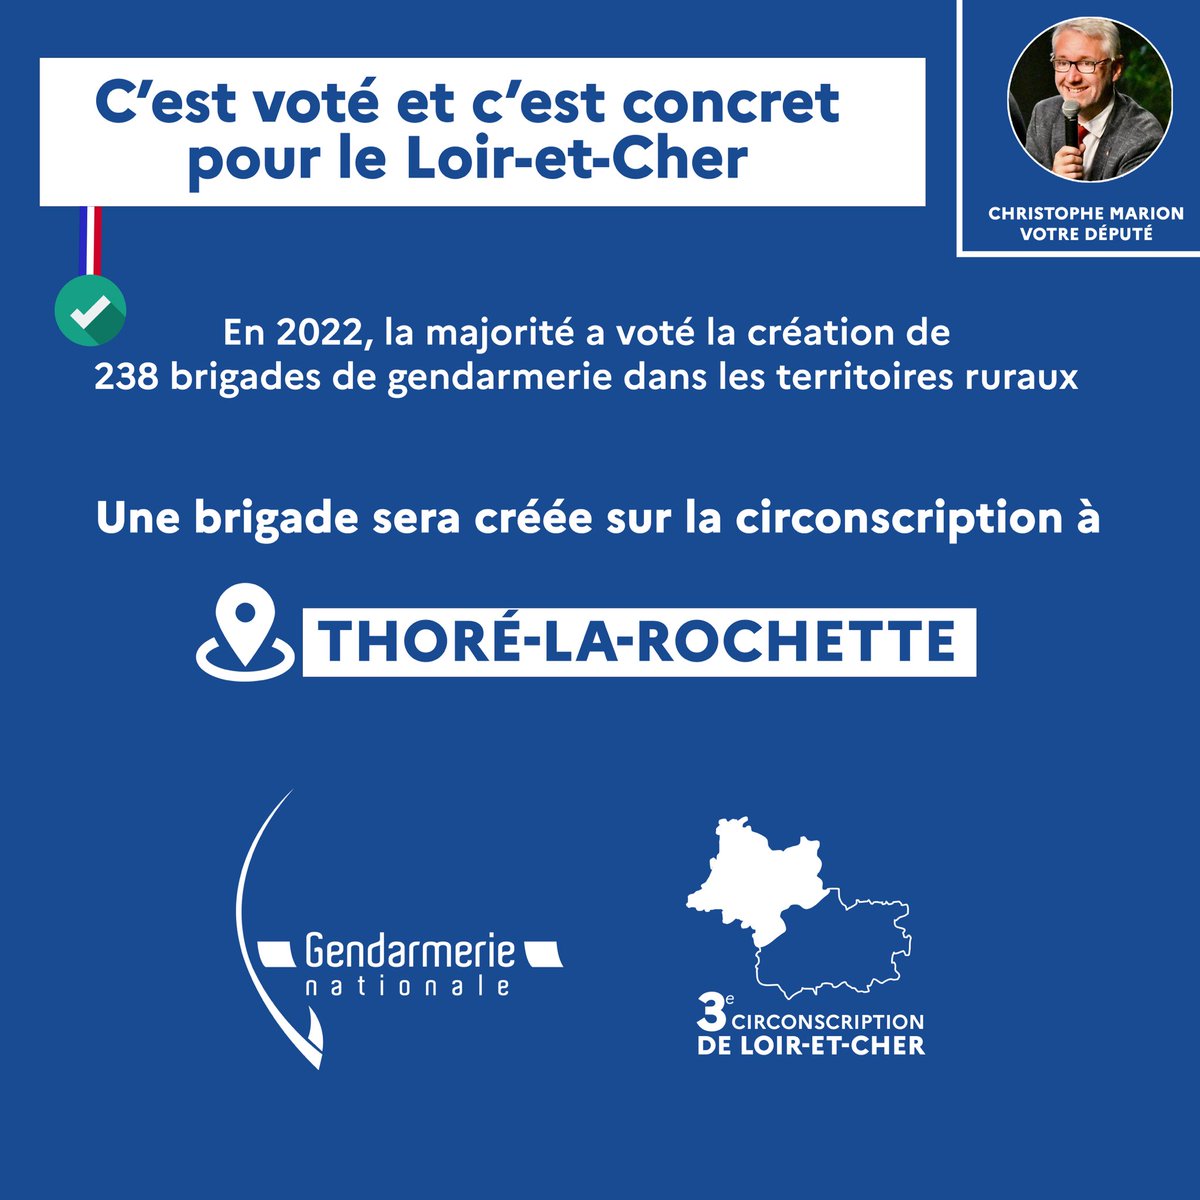 Le président de la République @EmmanuelMacron vient d’annoncer la création d’une brigade mobile de #gendarmerie mobile à Thoré-la-Rochette. C’était un de mes engagements de campagne. Plus de gendarmes en ruralité, c’est aussi plus de #sécurité pour les habitants.
#loiretcher